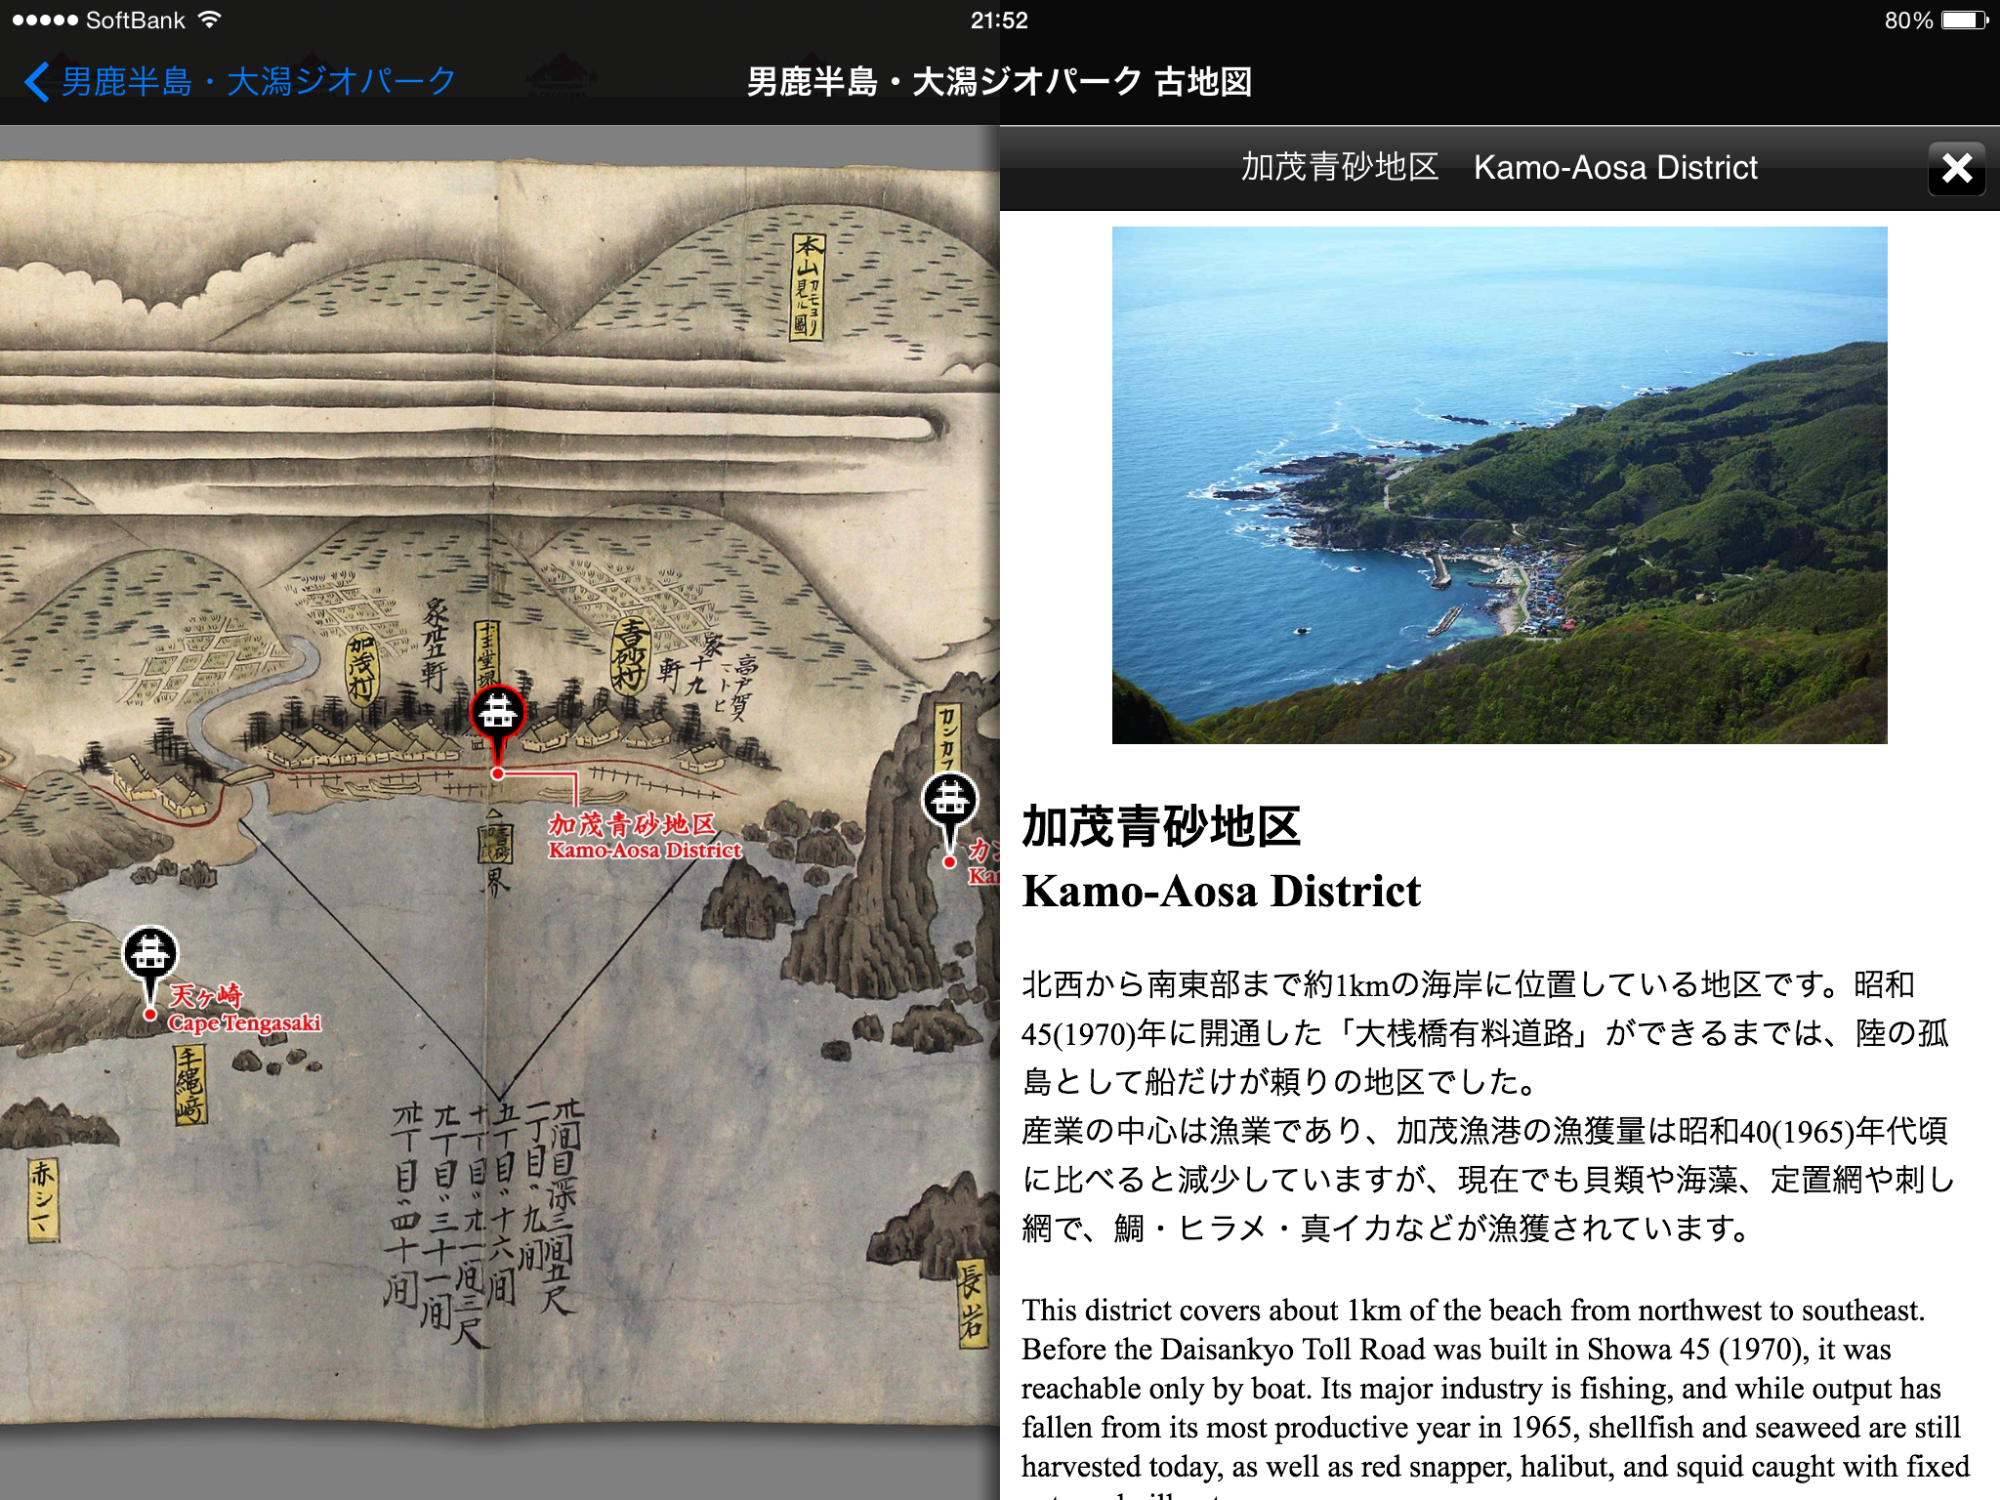 絹ぶるいの表示画面と加茂青砂地区の説明が表示されたアプリ画面